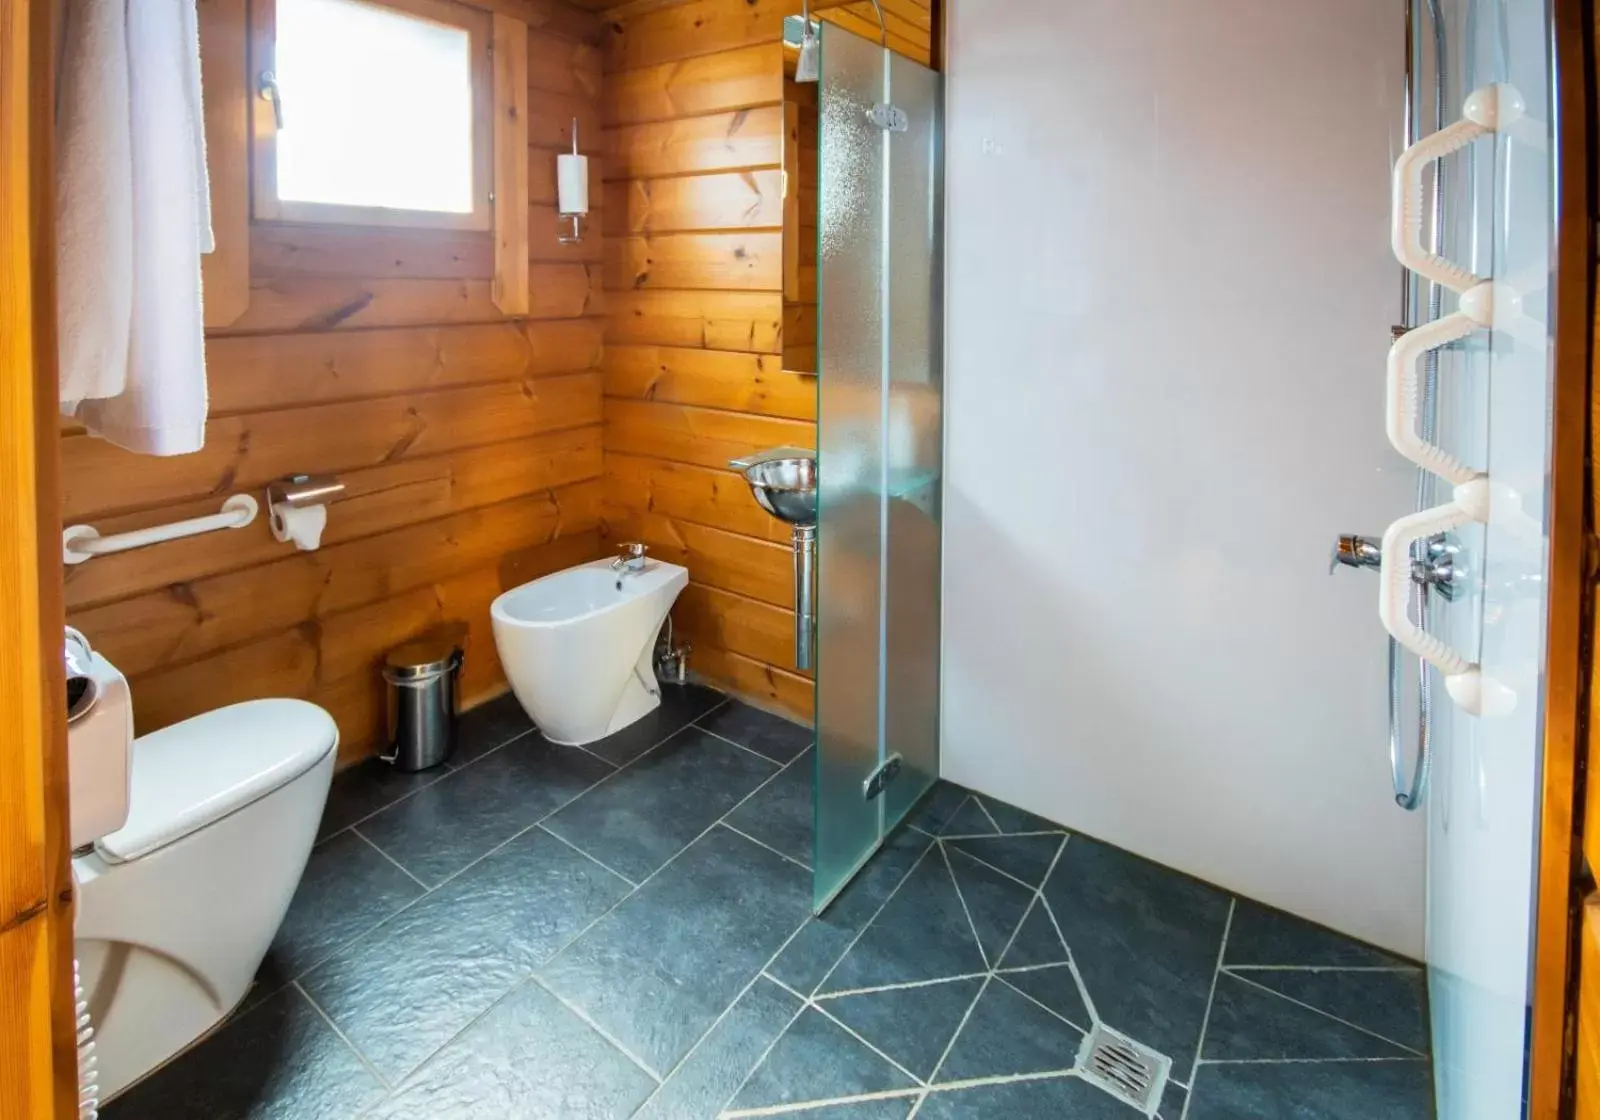 Shower, Bathroom in Hotel Somlom - ECO Friendly Montseny